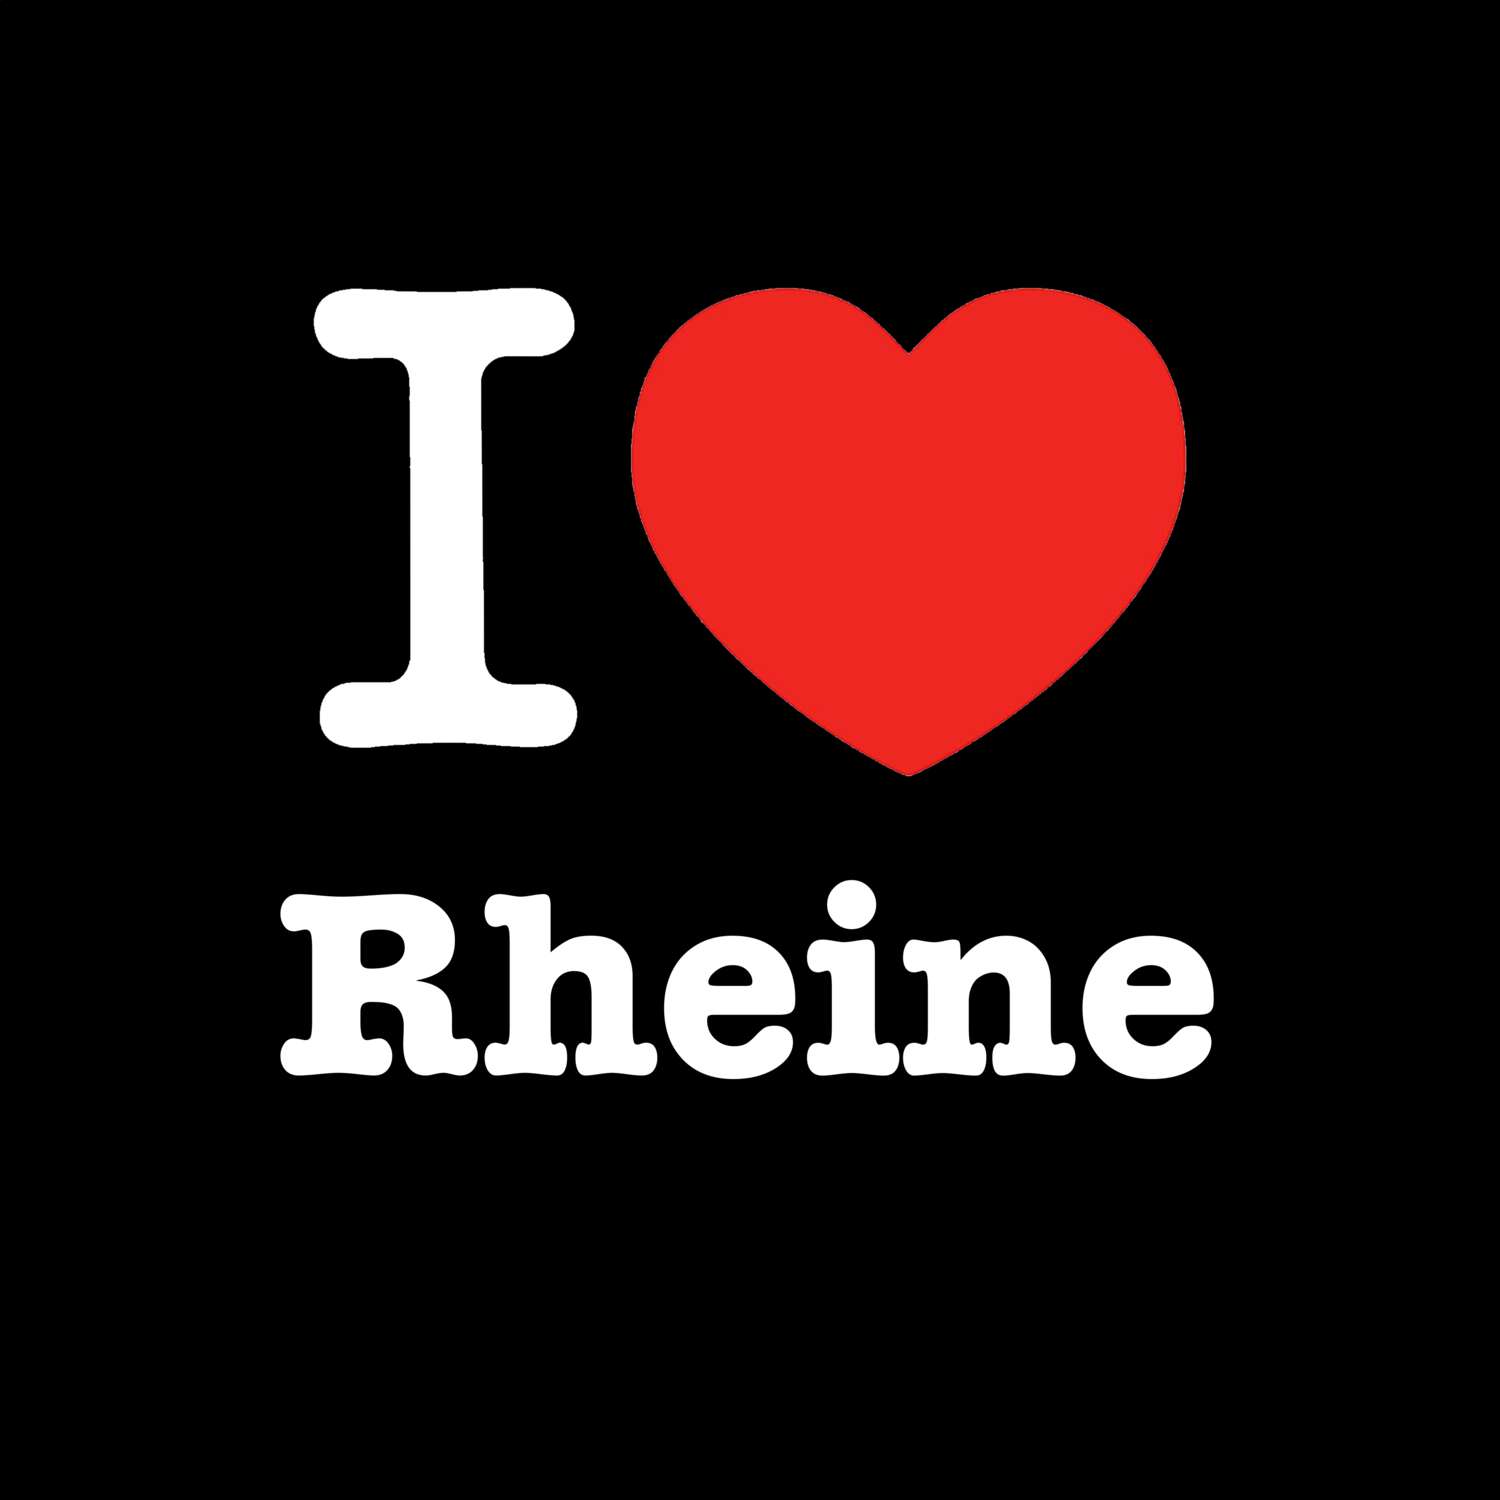 Rheine T-Shirt »I love«